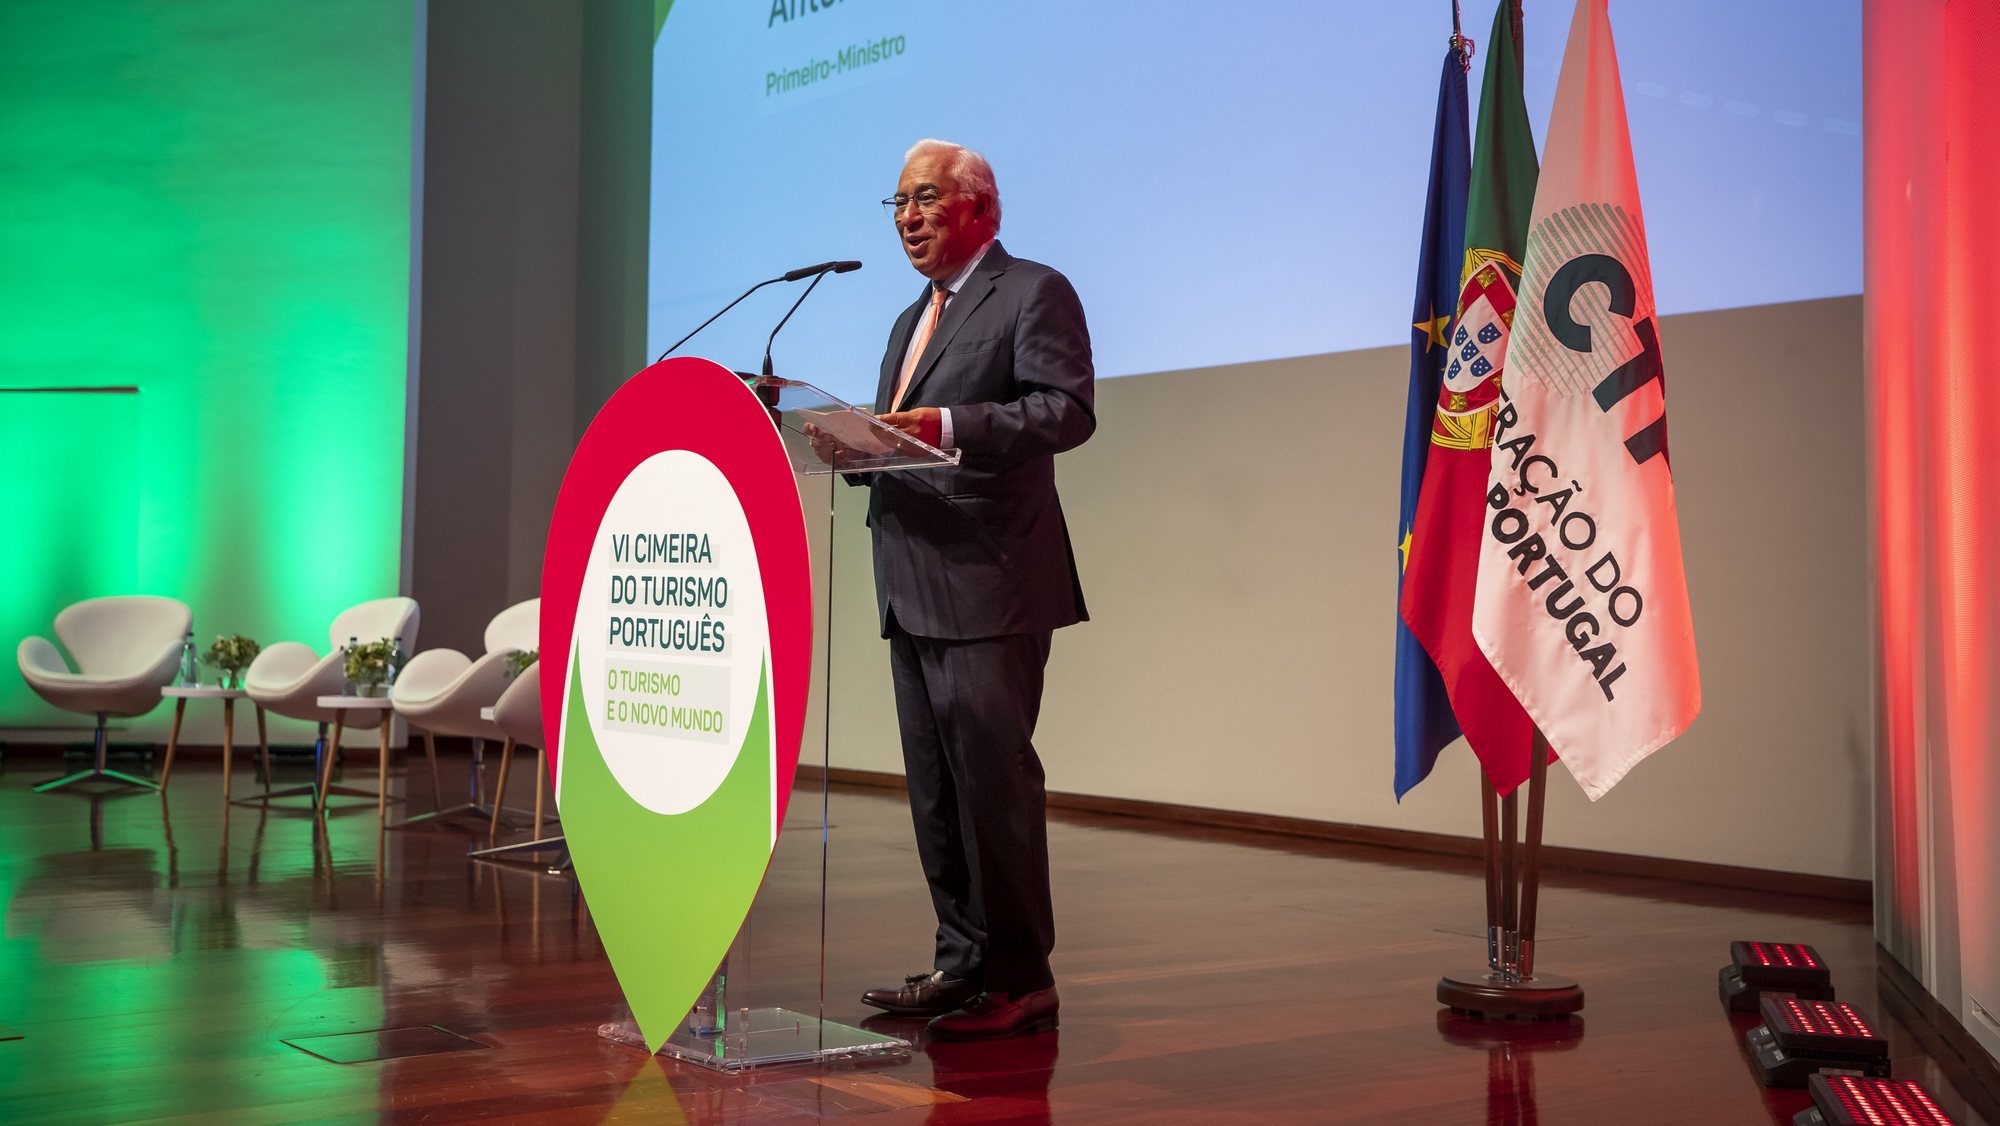 O primeiro-ministro, António Costa, usa da palavra durante a sessão de abertura da VI Cimeira do Turismo Português, no auditório da Fundação Champalimaud, em Lisboa, 27 de setembro 2022. JOSÉ SENA GOULÃO/LUSA